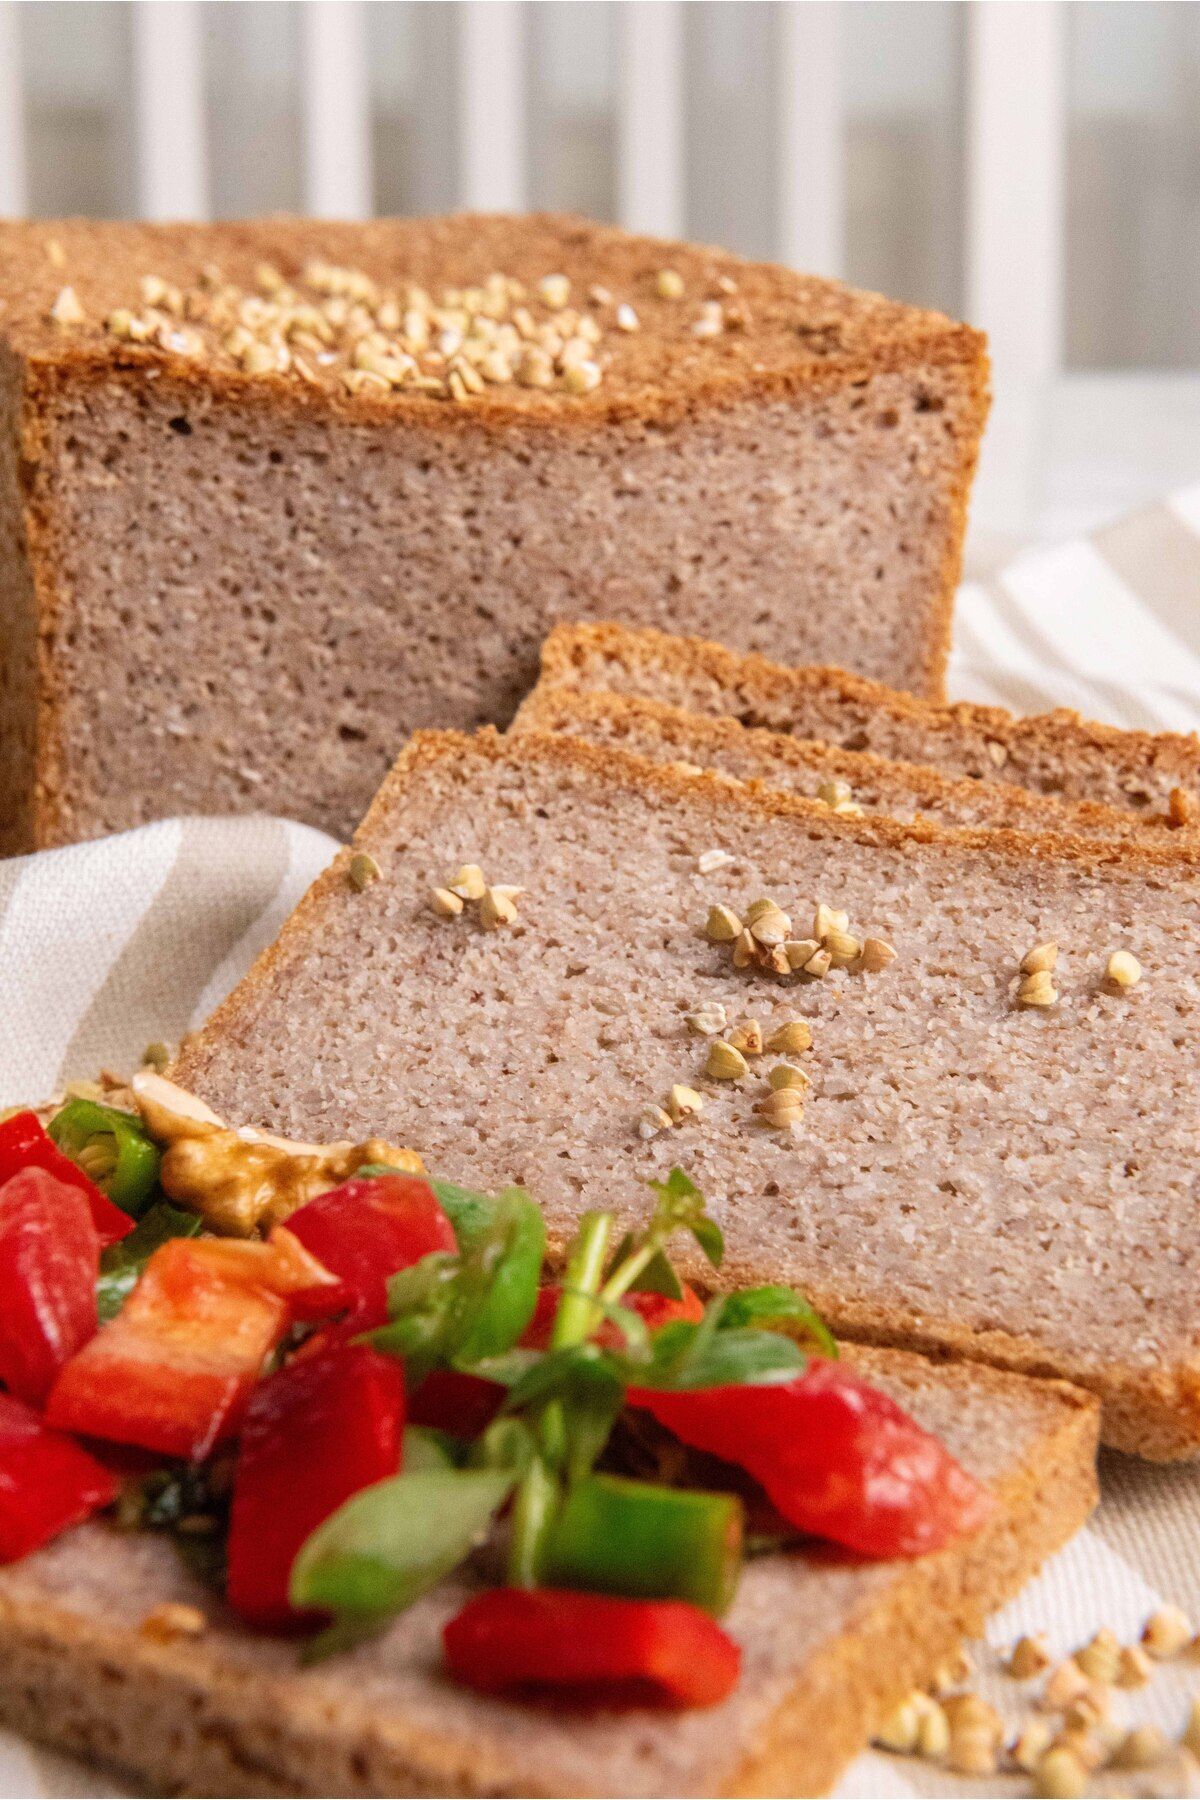 PANN Glutensiz Karabuğday Ekmeği, Sade,baharlı,zerdeçallı_3x1000gr_mayasız, Aktive Edilmiş Tohum